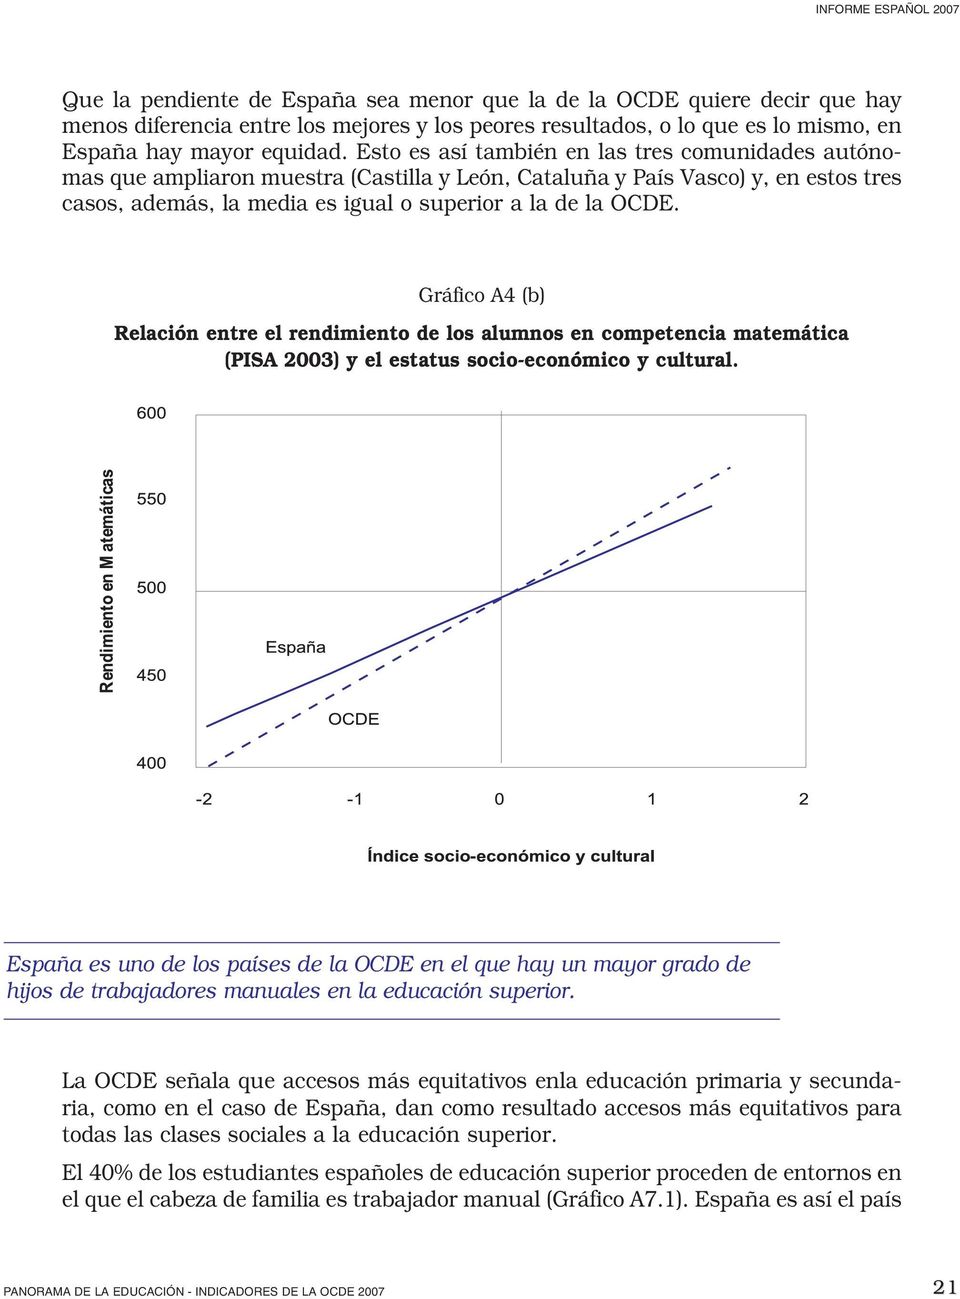 Gráfico A4 (b) Relación entre el rendimiento de los alumnos en competencia matemática (PISA 2003) y el estatus socio-económico y cultural.